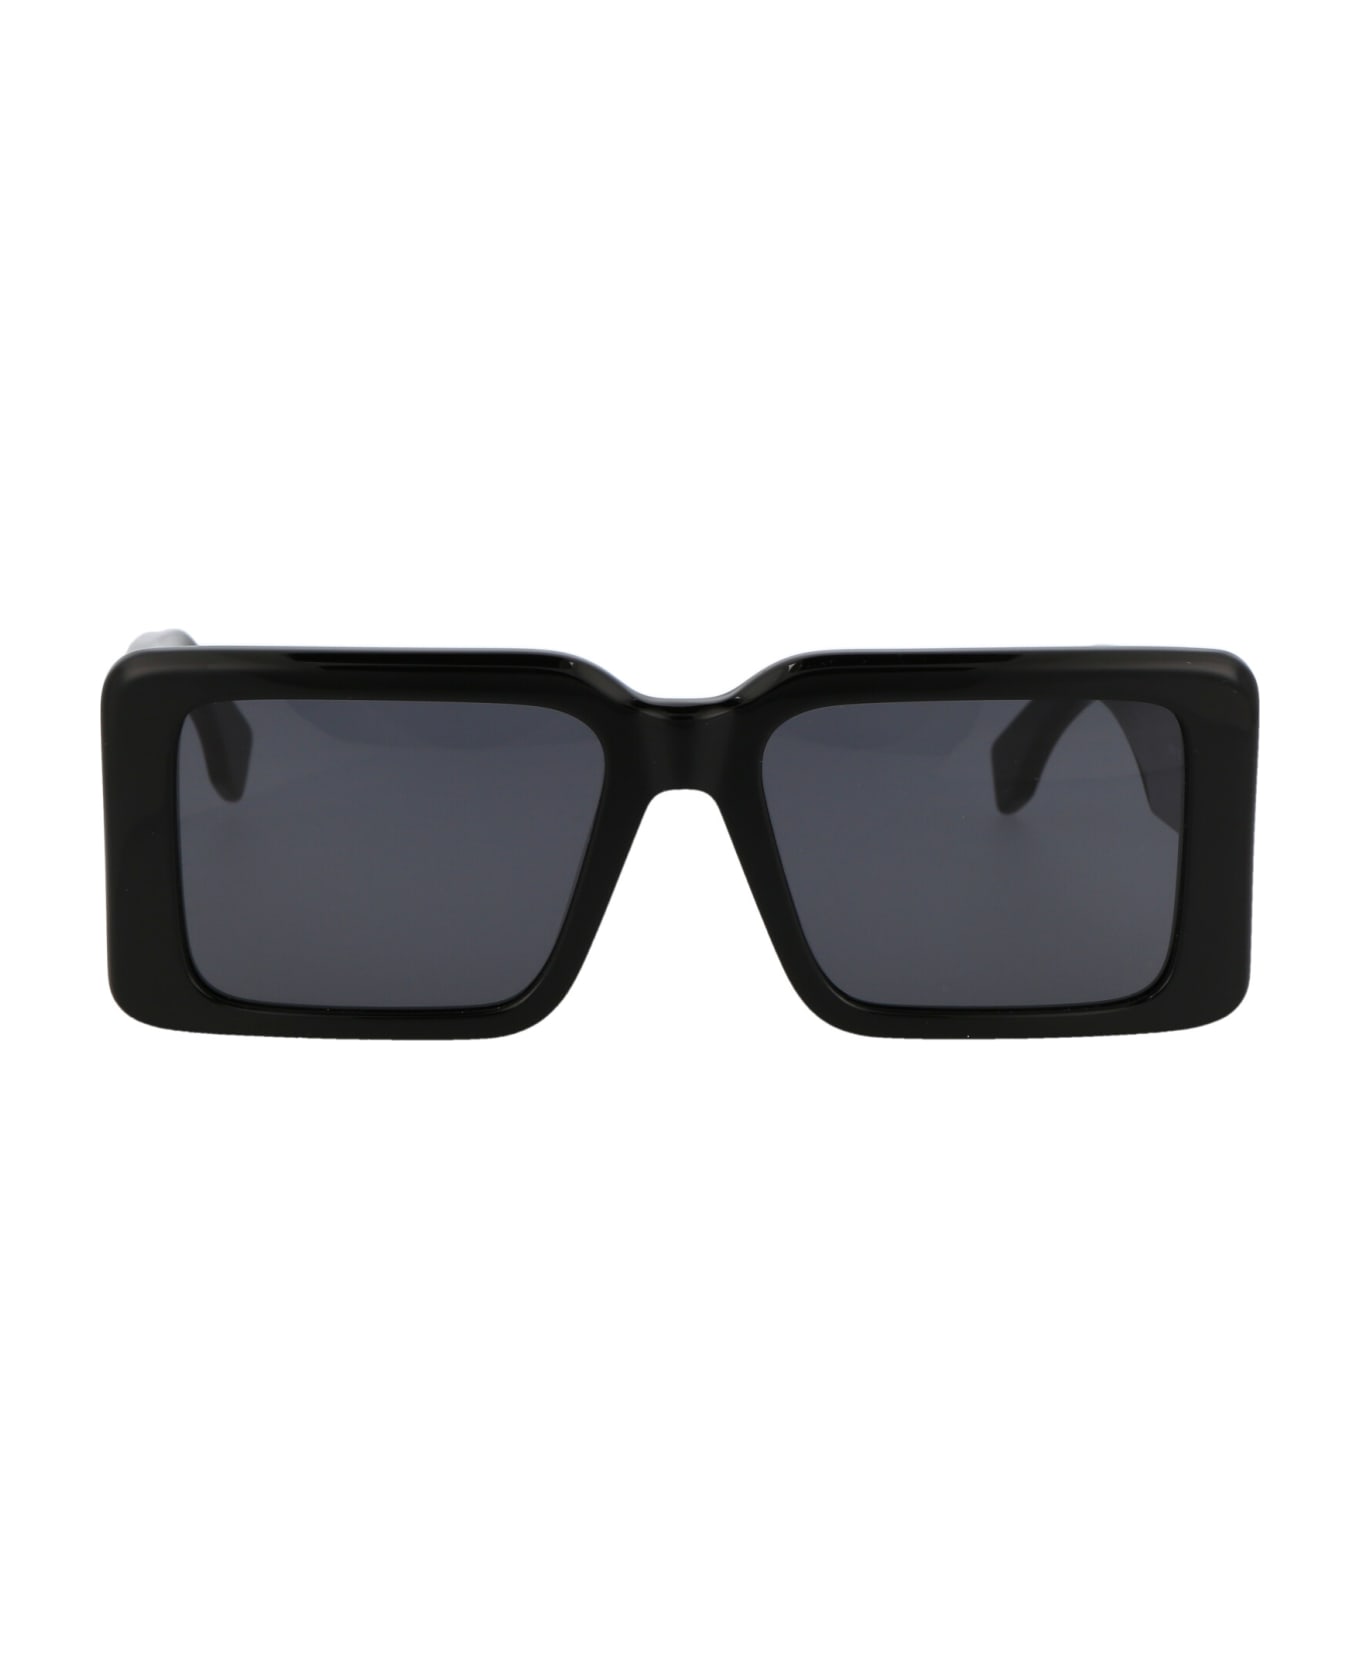 Marcelo Burlon Sicomoro Sunglasses - 1007 BLACK